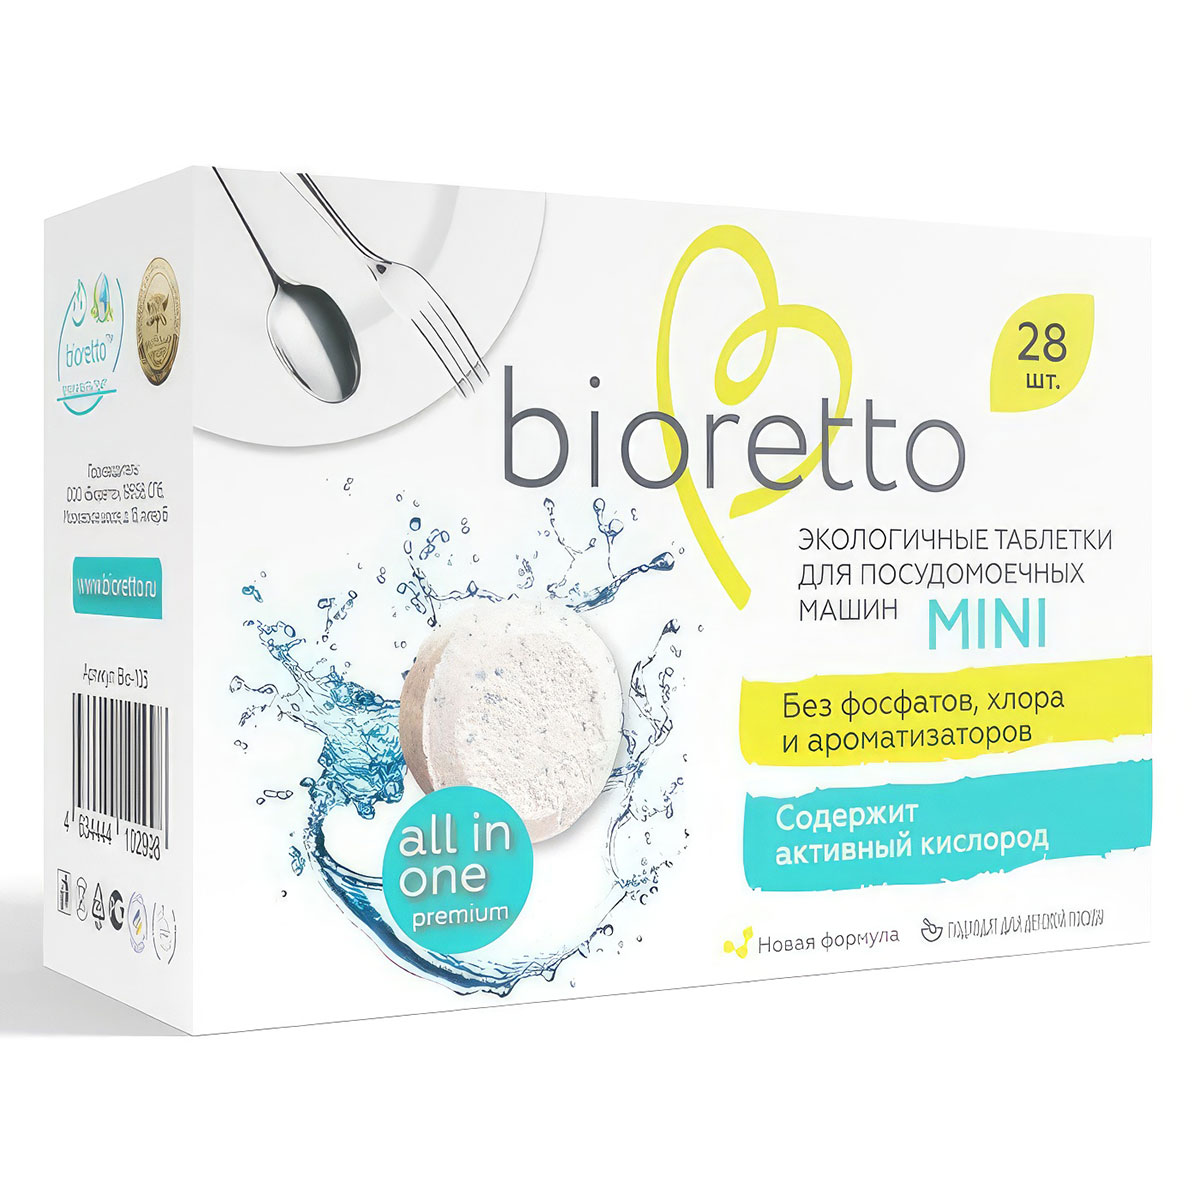 Таблетки для посудомоечных машин Bioretto Bio 28шт контрсекс neo таблетки для коррекции полового поведения для котов и кобелей 10 таблеток